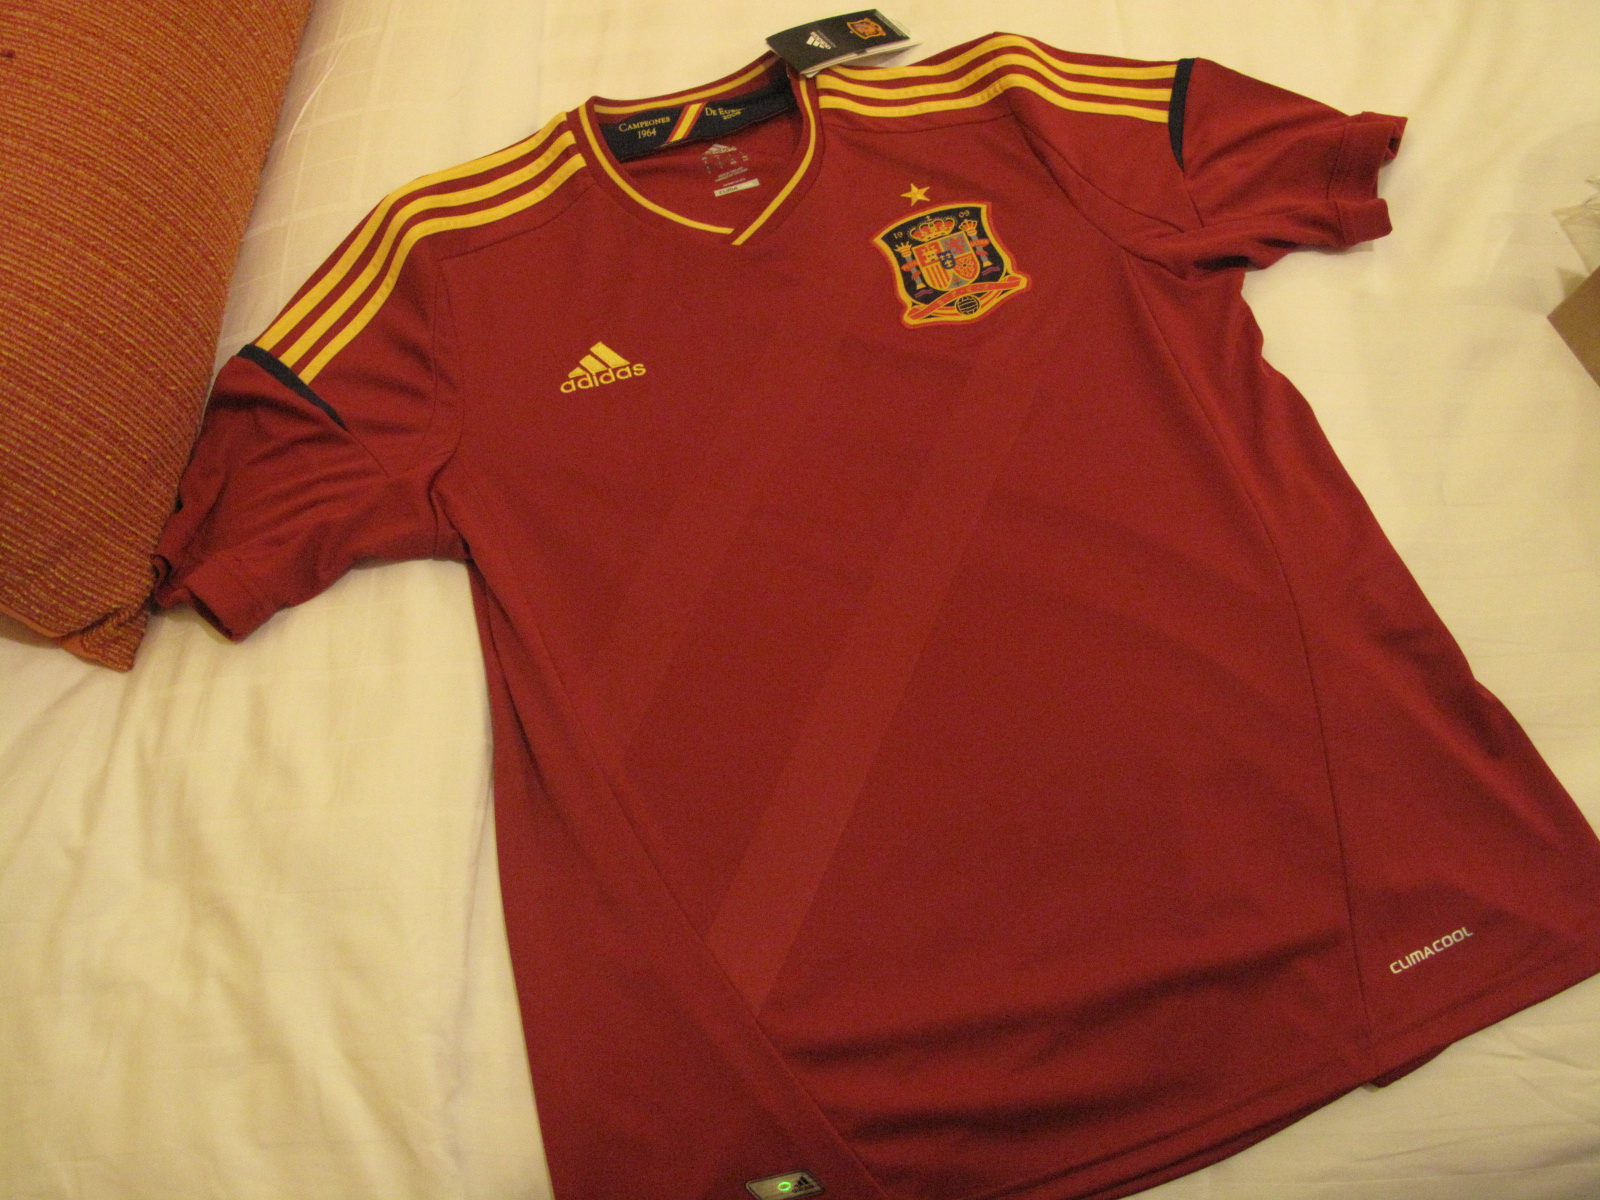 Nueva+camiseta+real+madrid+2012+roja